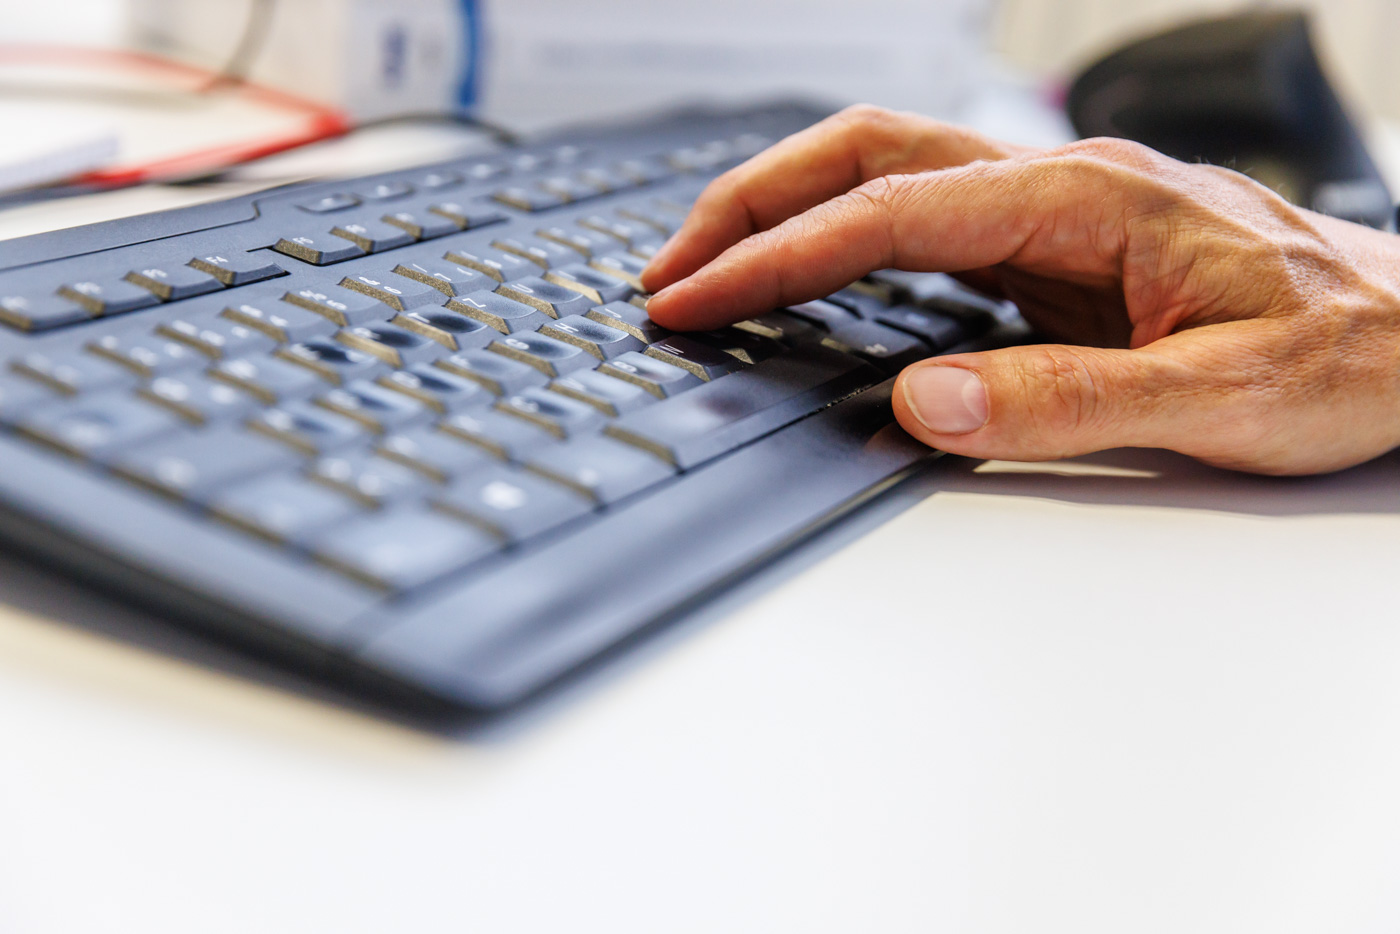 Foto: eine Hand liegt auf einer Tastatur